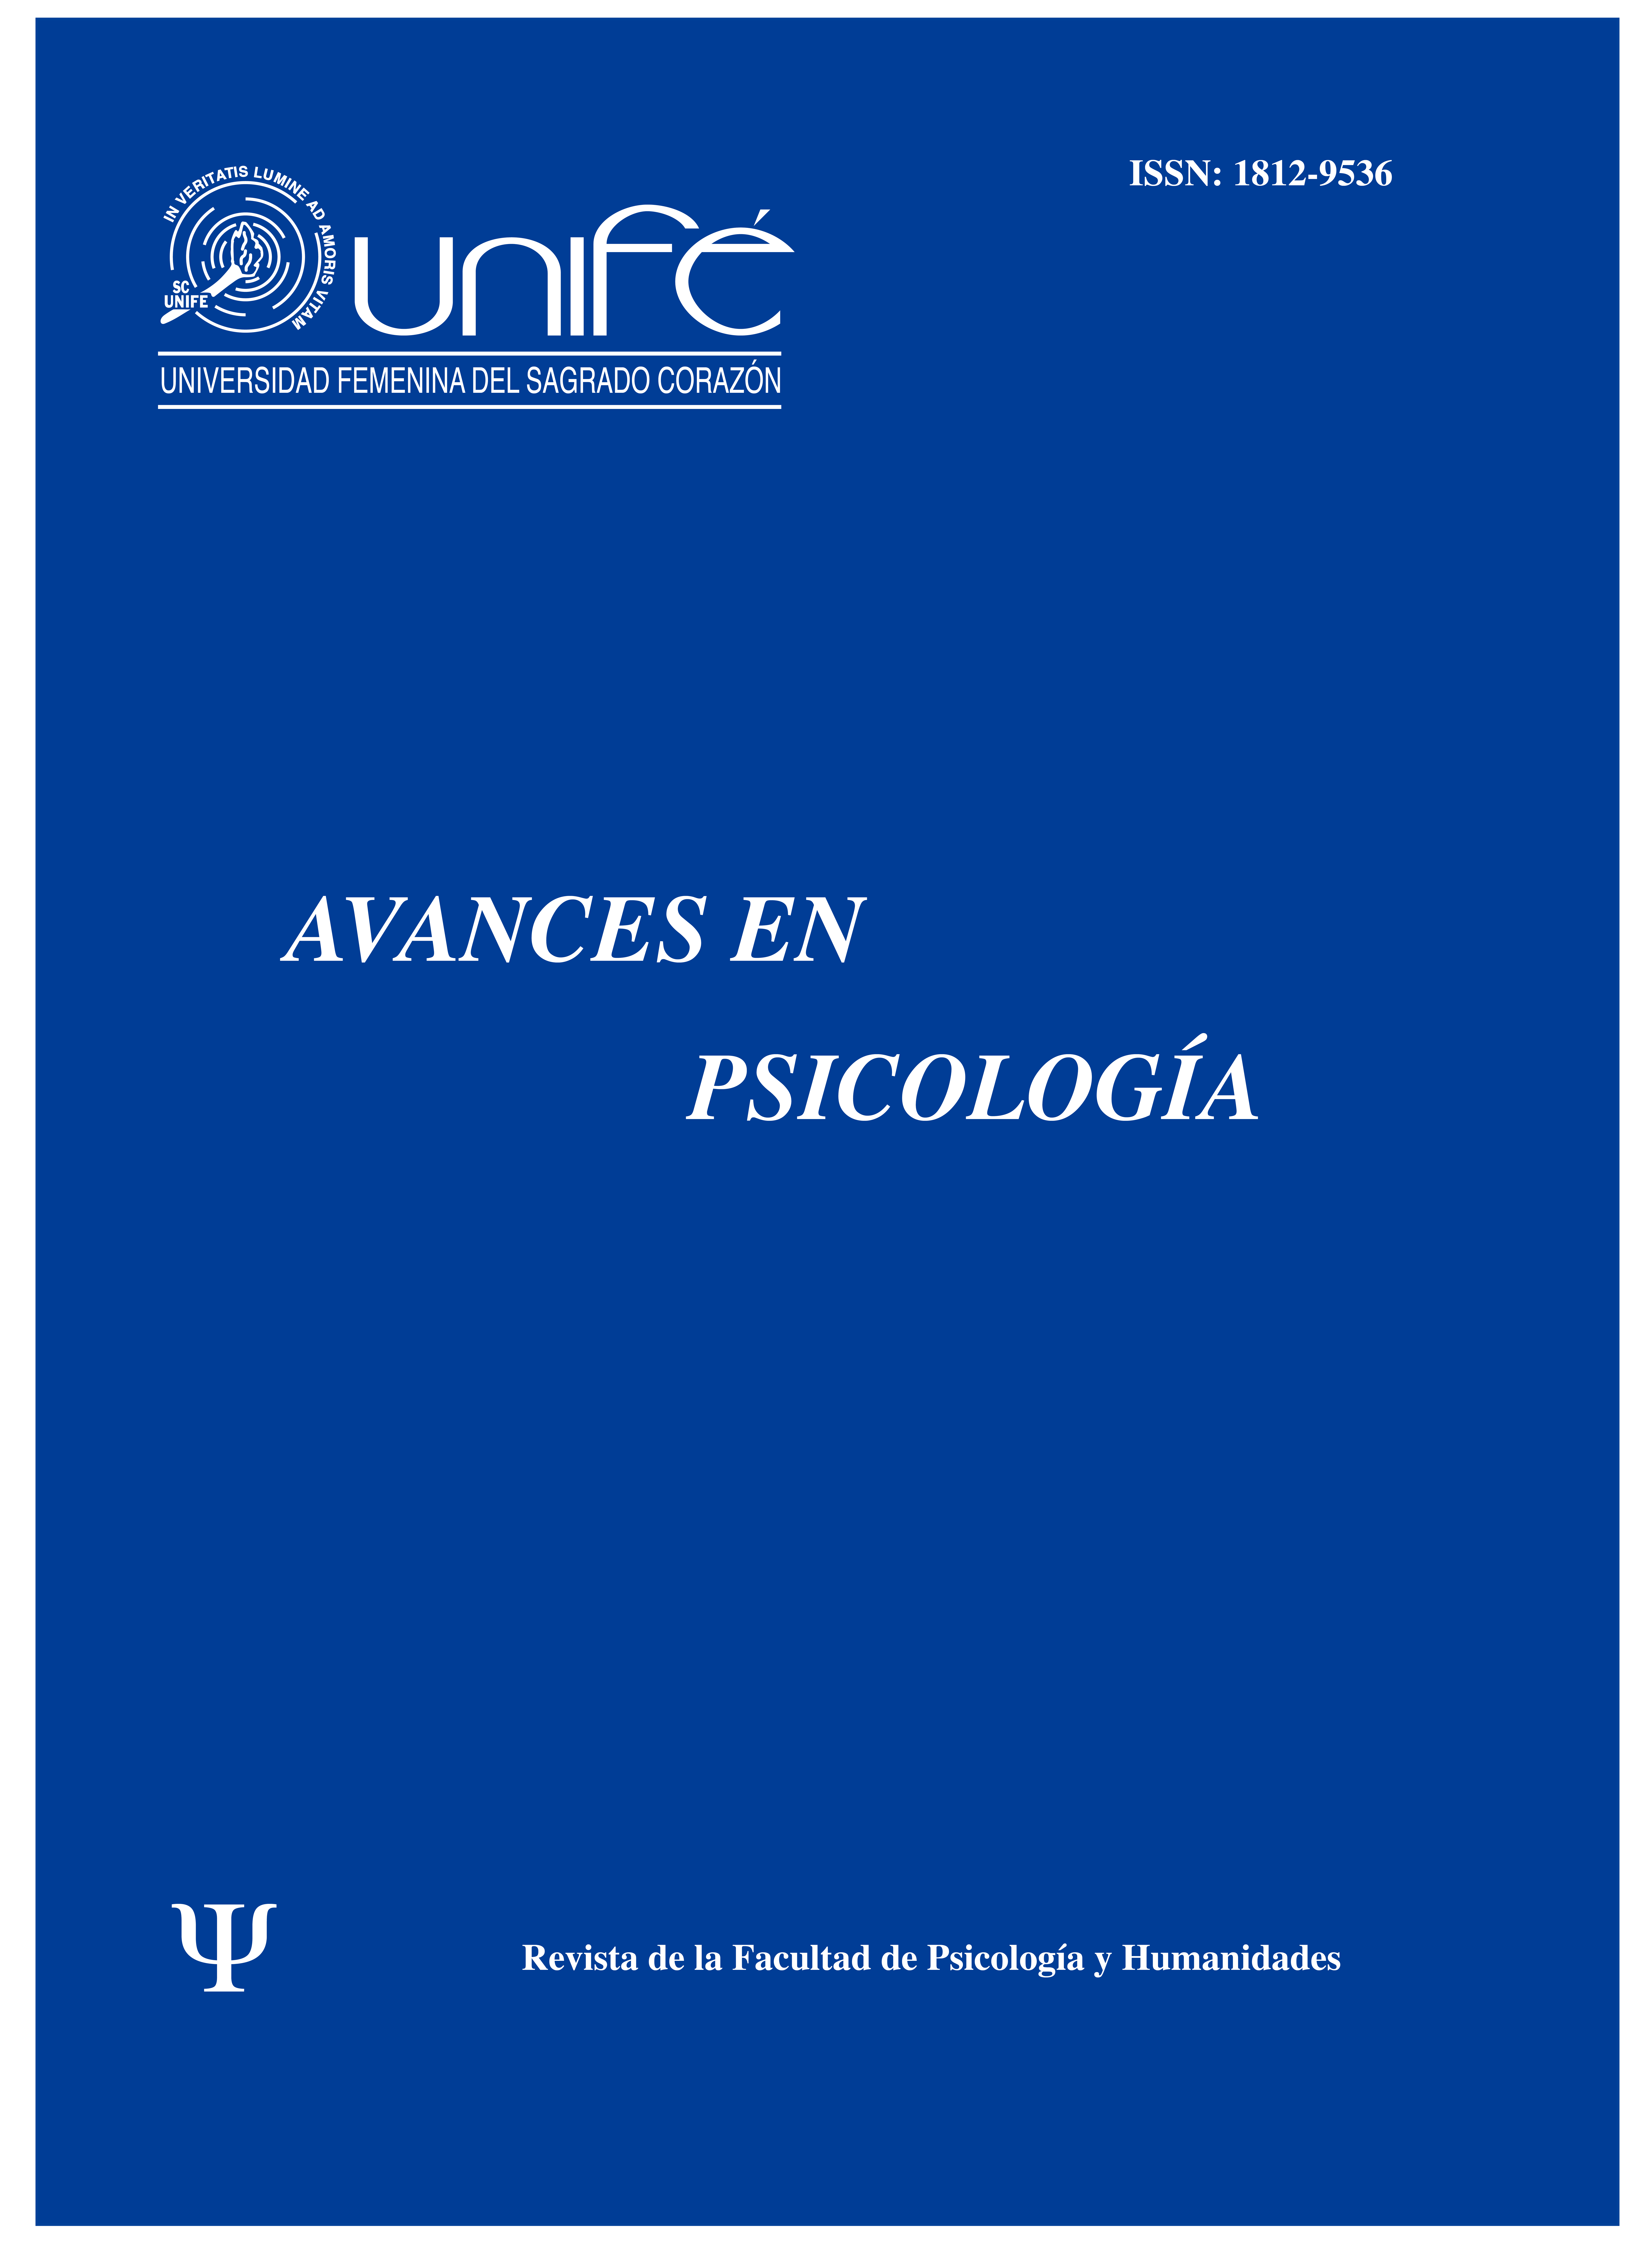 					Ver Vol. 21 Núm. 1 (2013): Avances en Psicología: Revista de la Facultad de Psicología y Humanidades
				